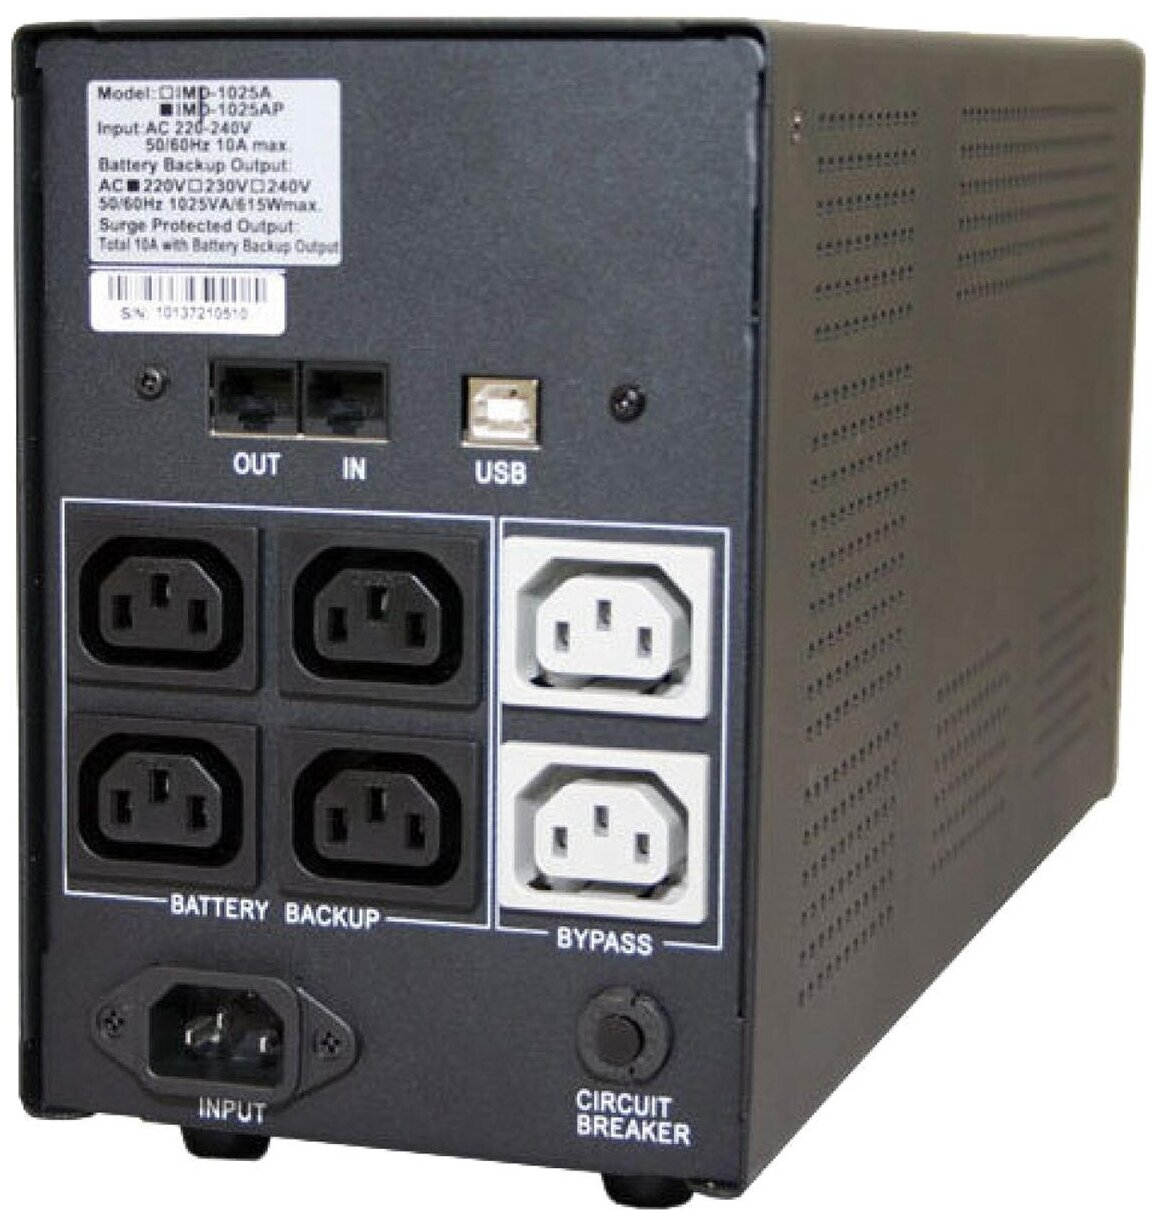 Интерактивный ИБП Powercom Imperial IMP-1500AP